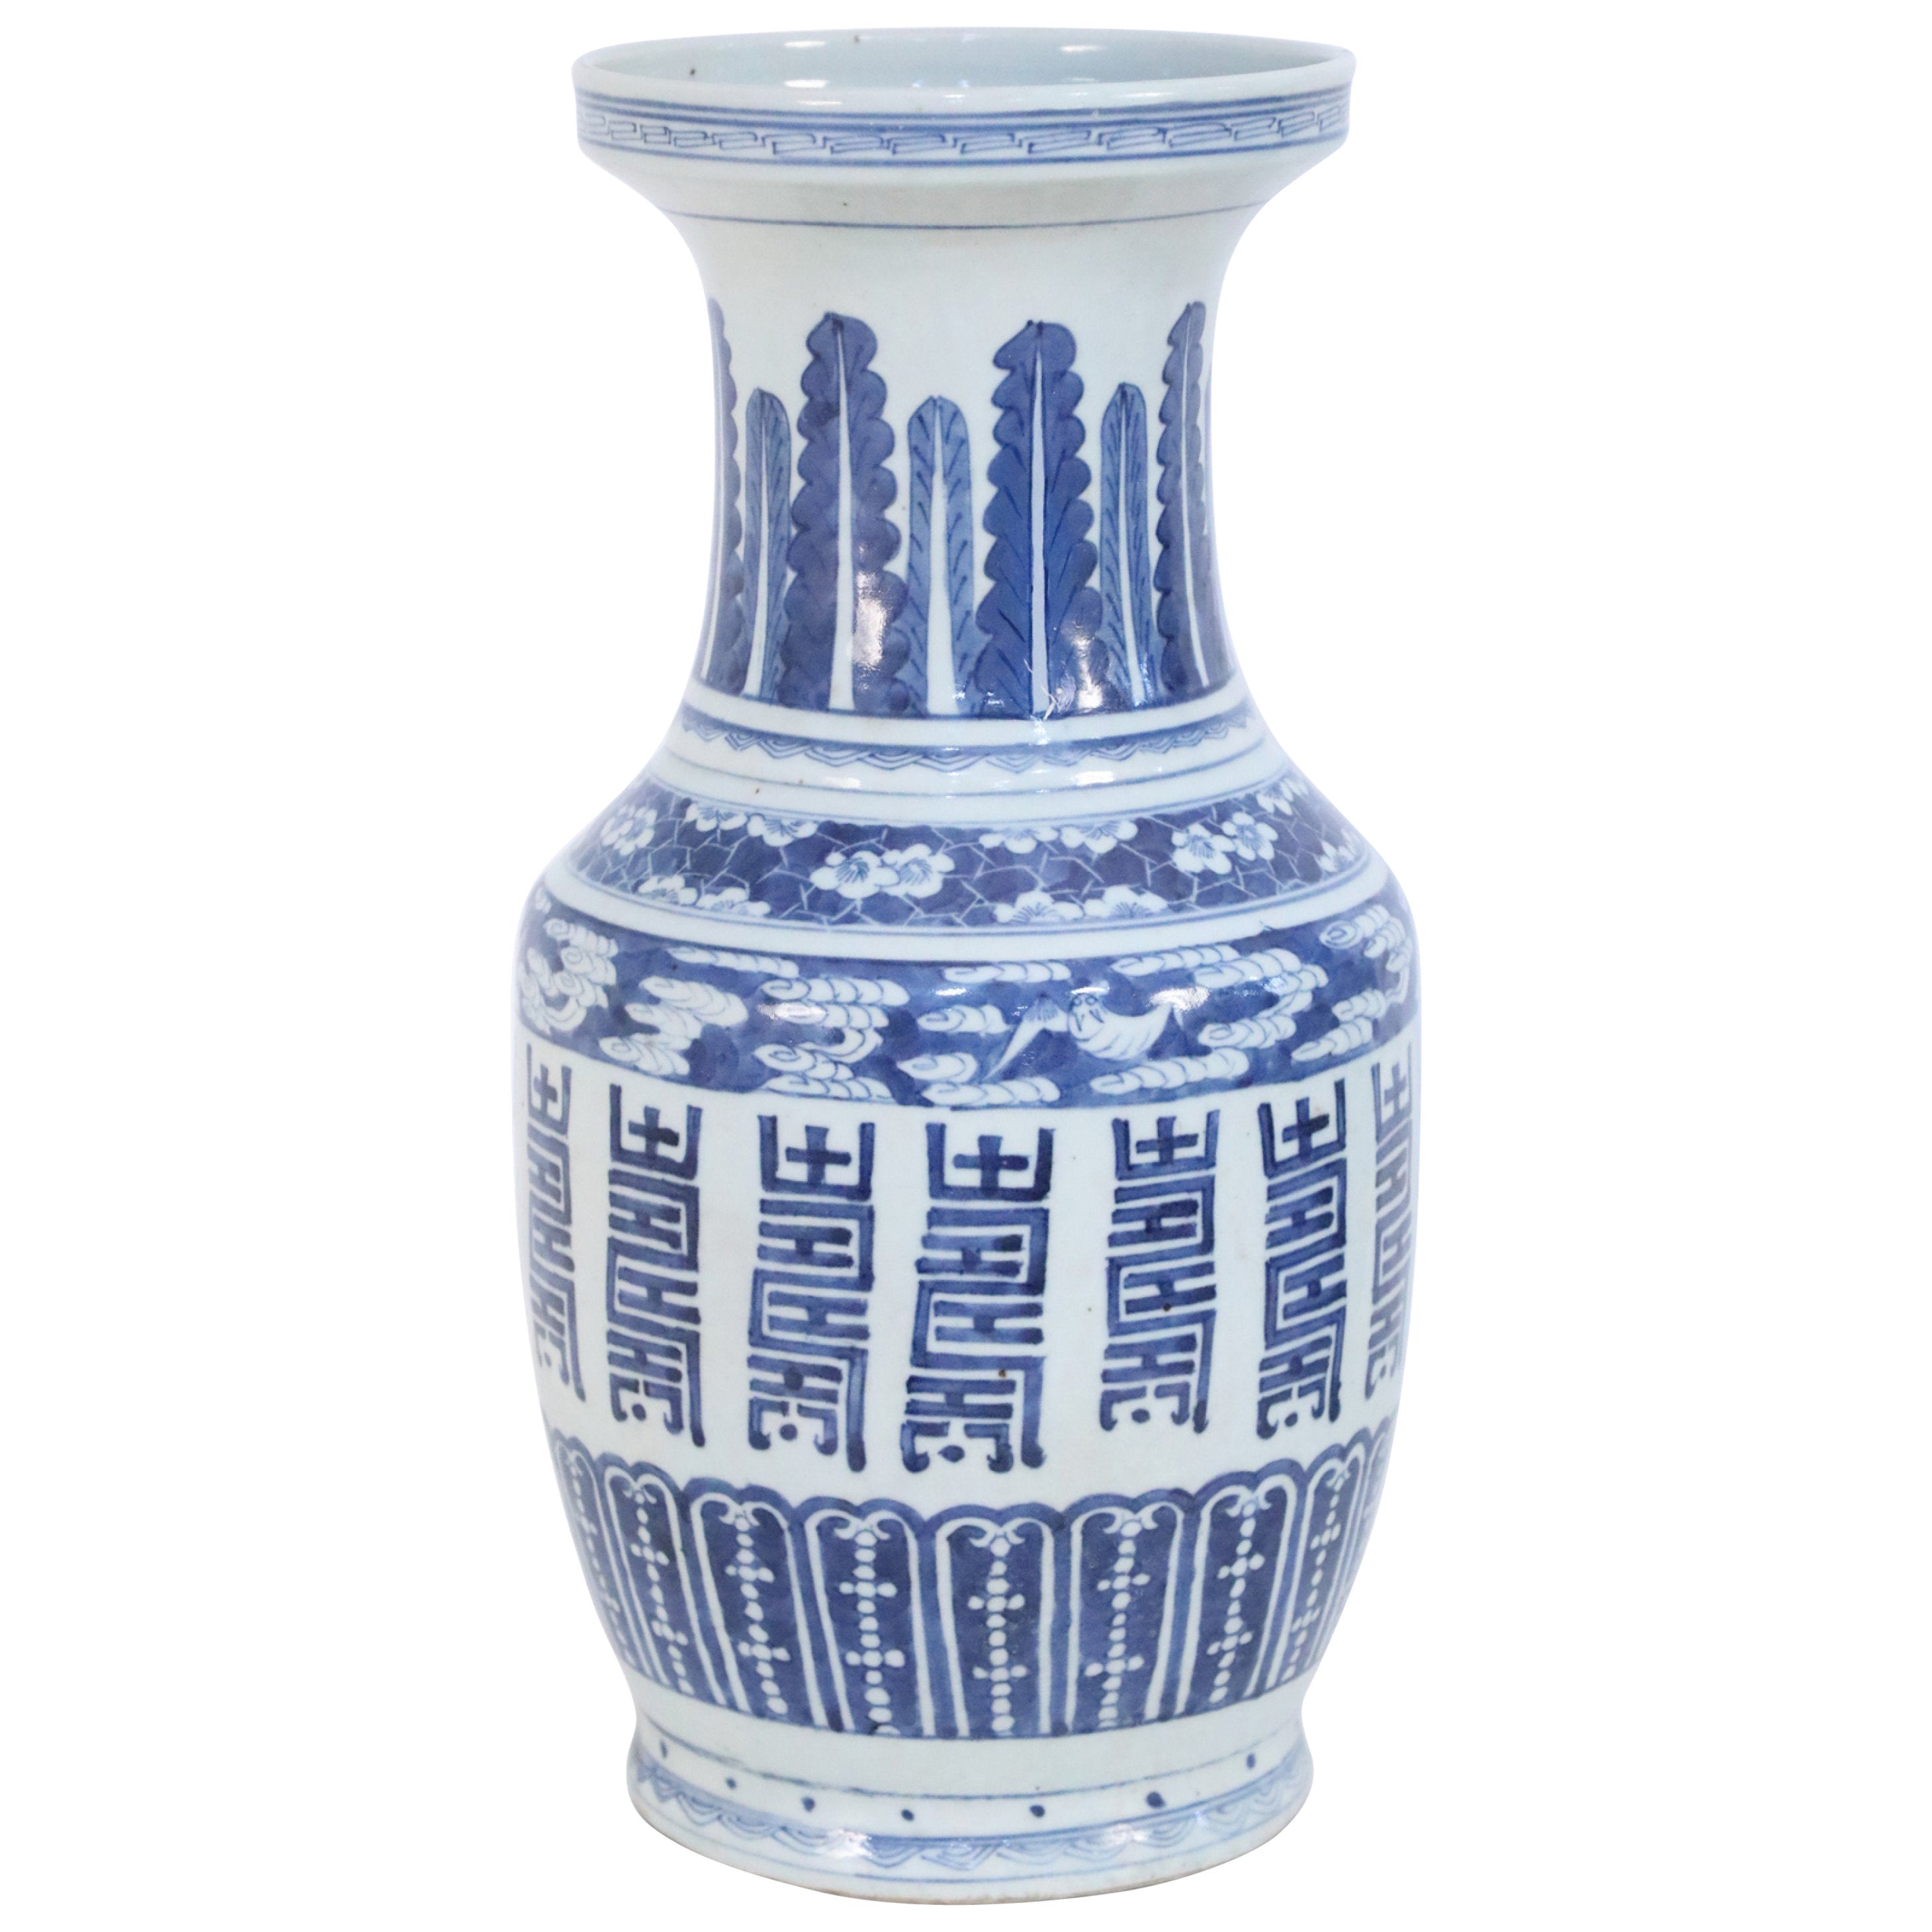 Chinesische chinesische mehrfarbige Porzellanurne in Weiß und Blau